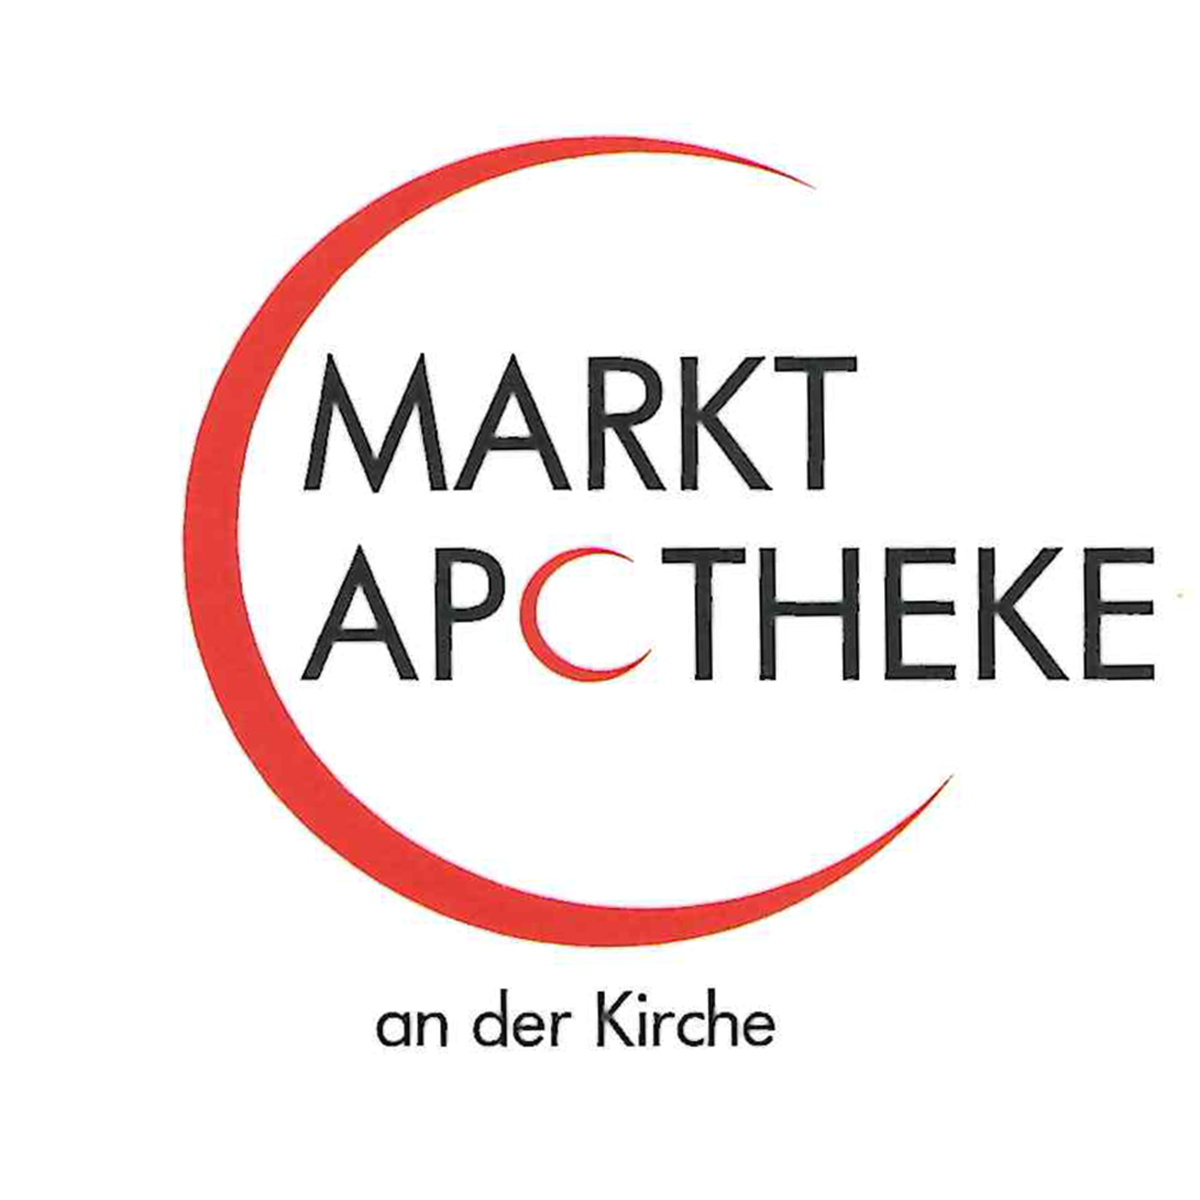 Markt-Apotheke in Willich - Logo